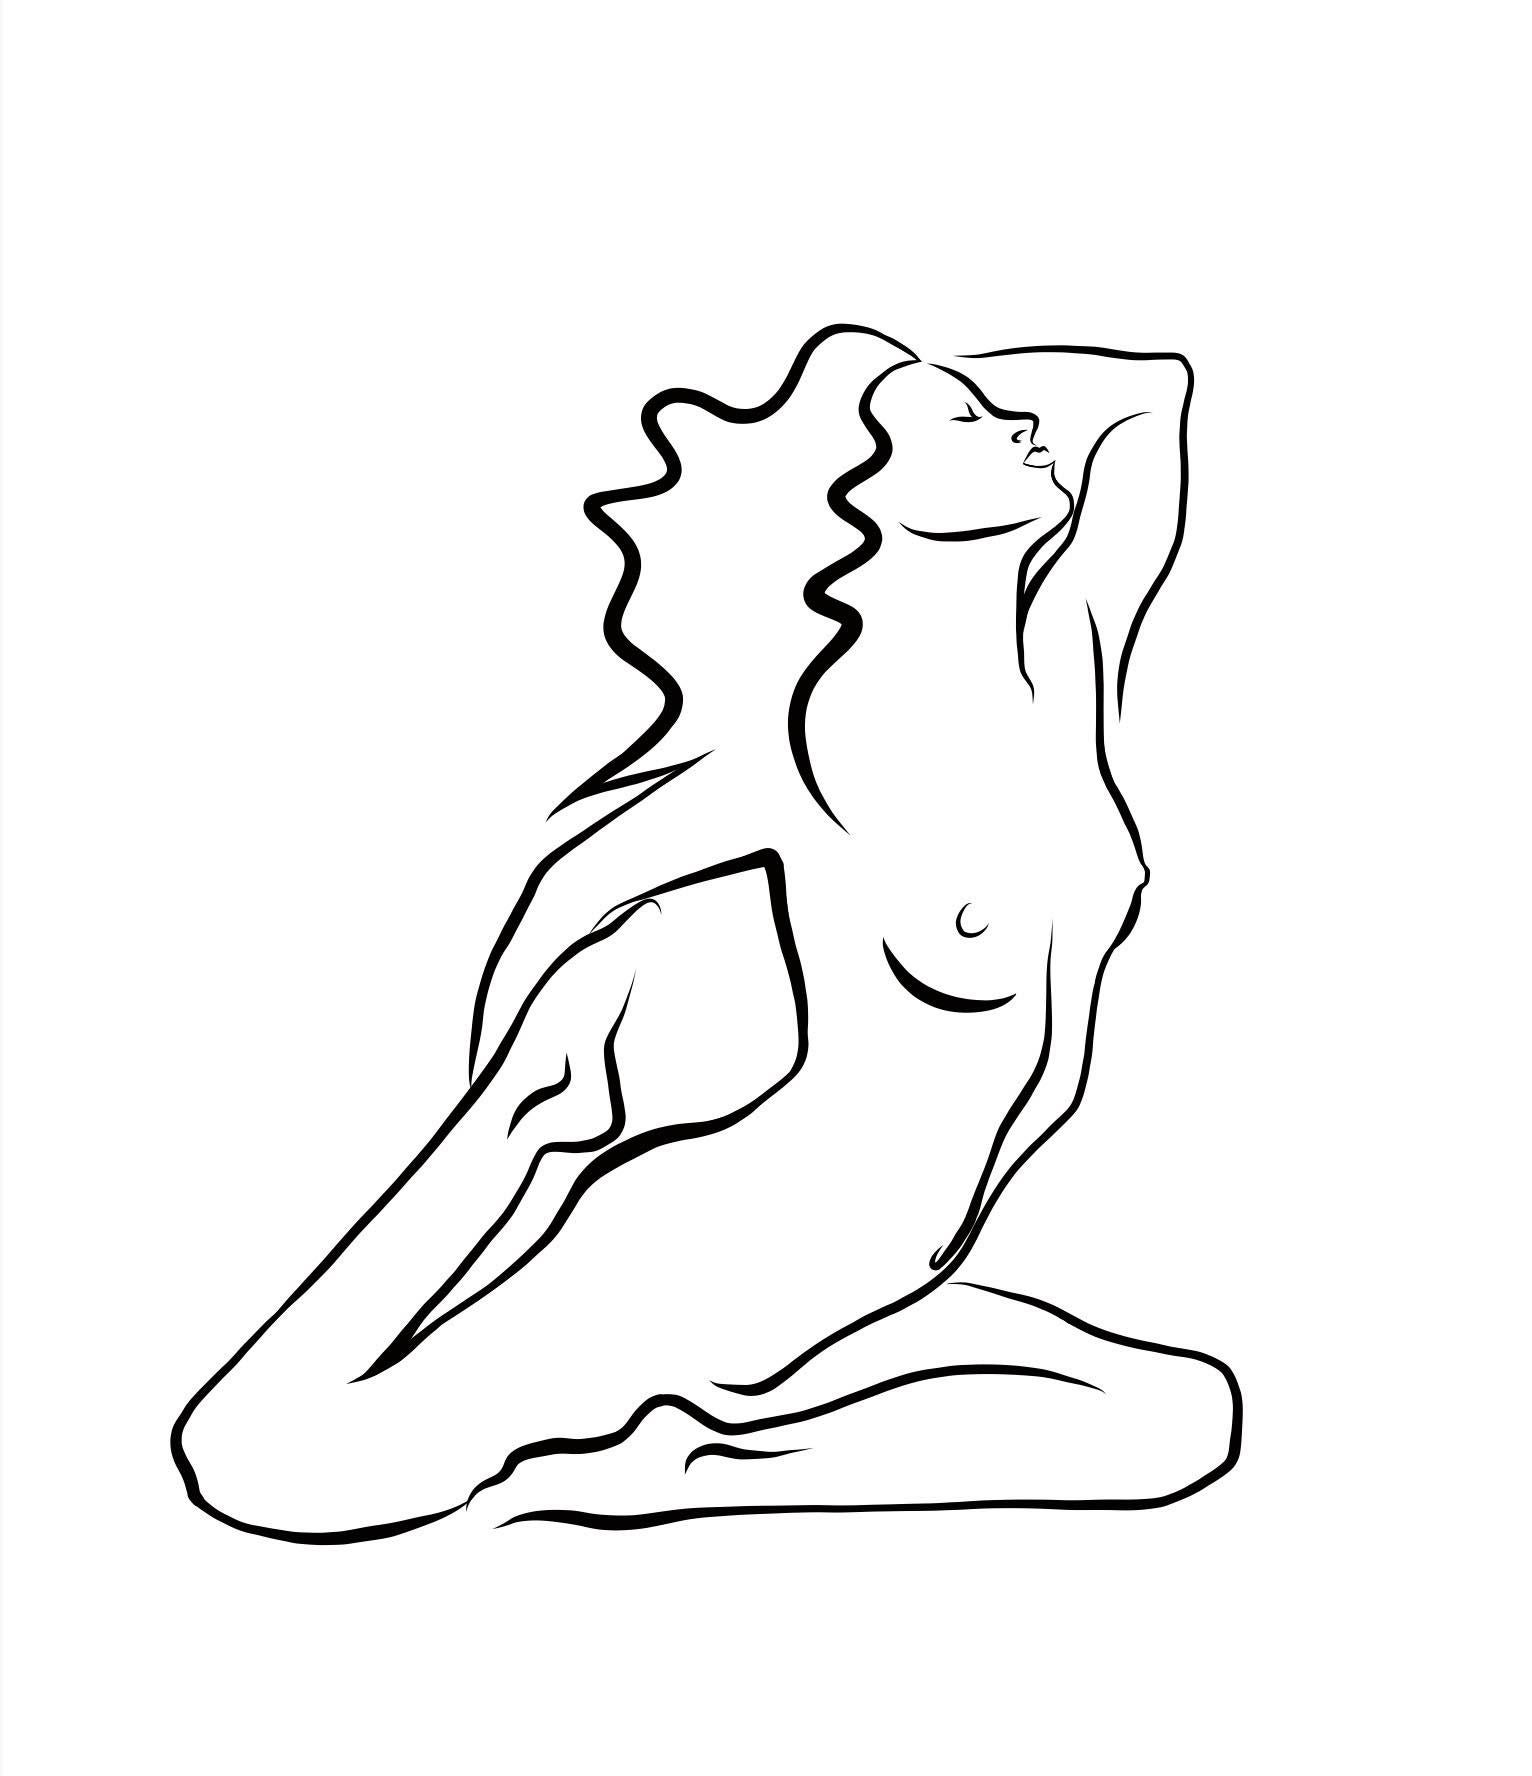 Haiku n° 28 - Dessin numérique représentant une femme nue agenouillée